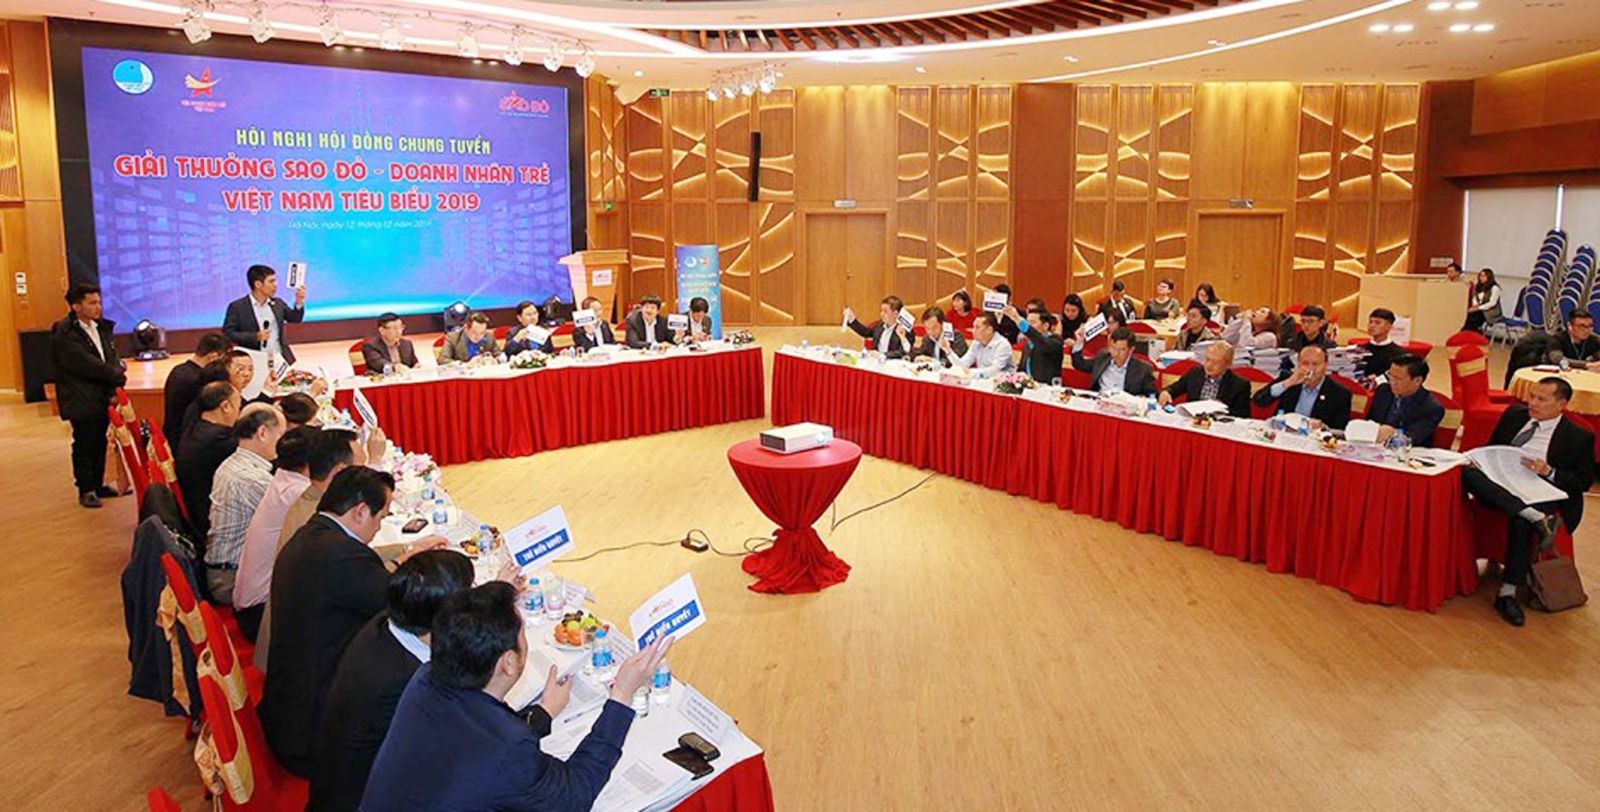  Hội nghị Chung tuyển Giải thưởng Sao Đỏ - Doanh nhân trẻ Việt Nam tiêu biểu 2019.